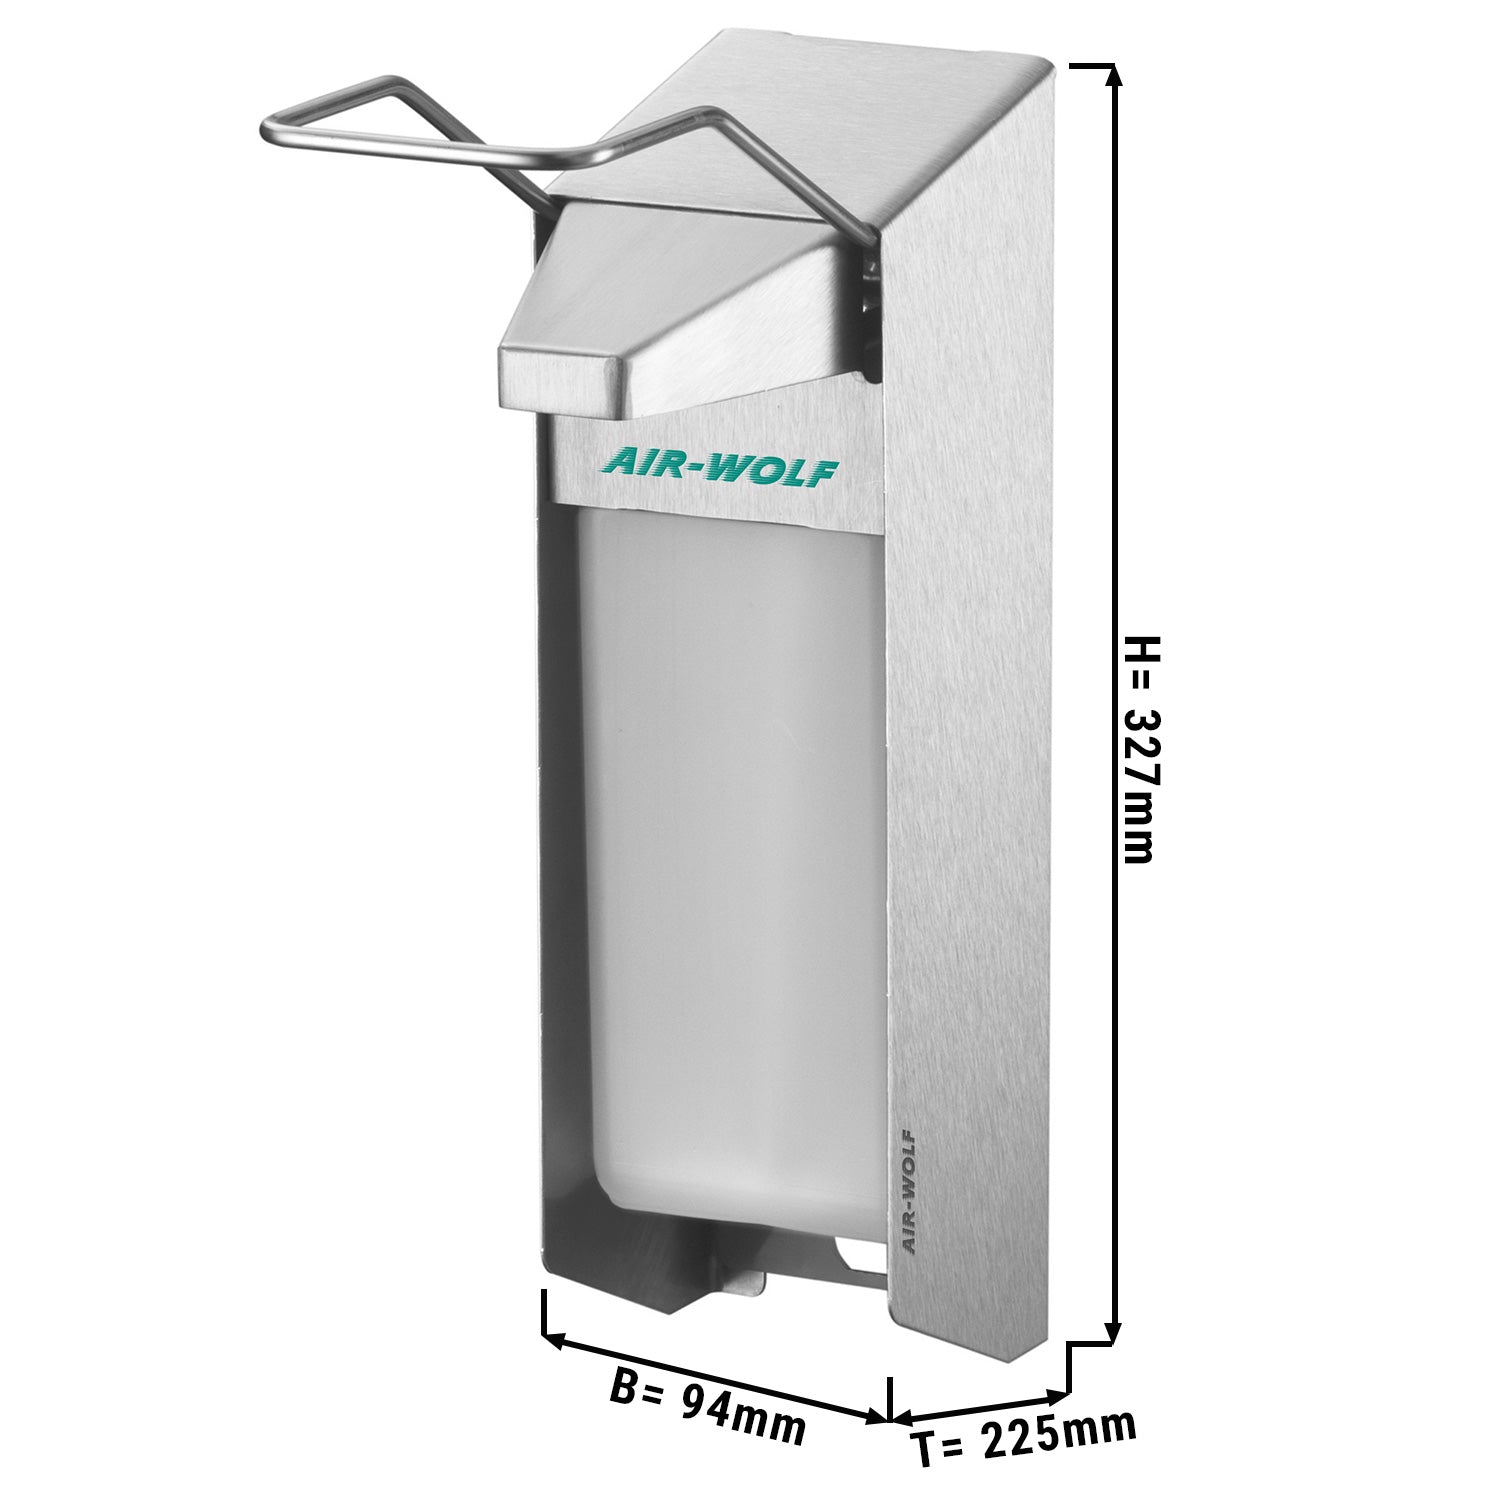 AIR-WOLF - Såpe- og desinfeksjonsmiddeldispenser med betjeningspak - 1000 ml